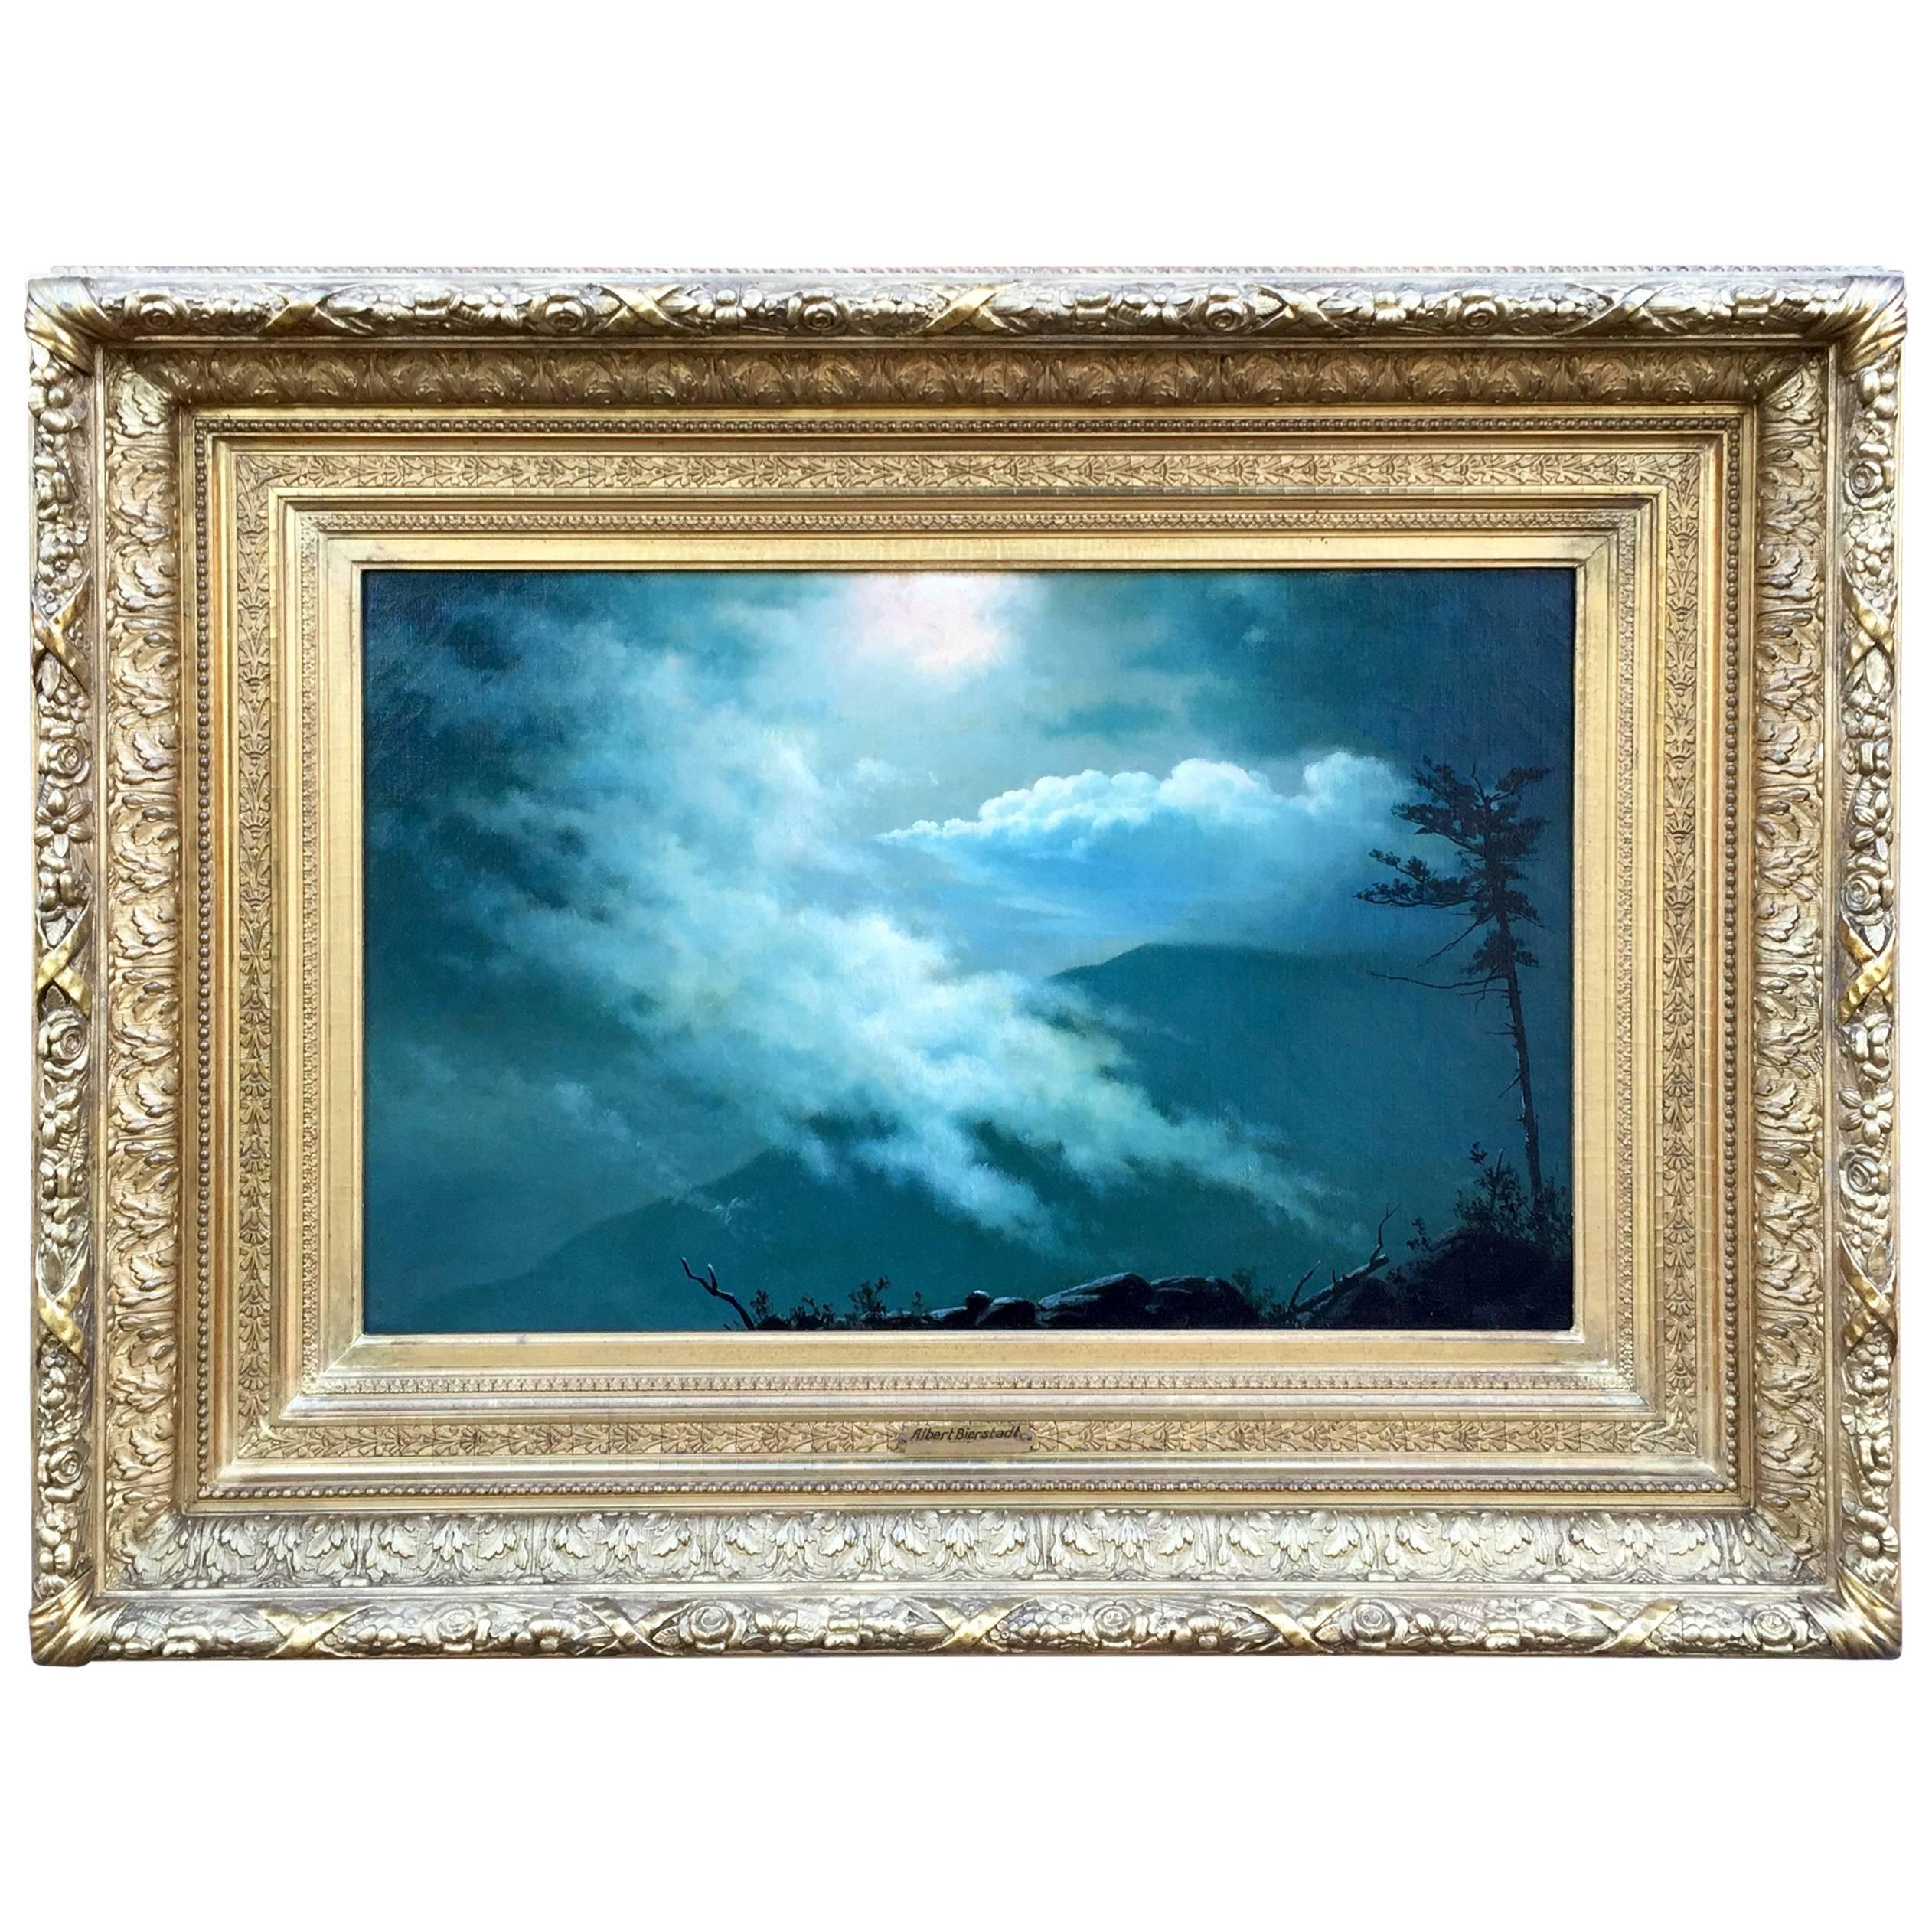 "Moonlight Mist" by Albert Bierstadt